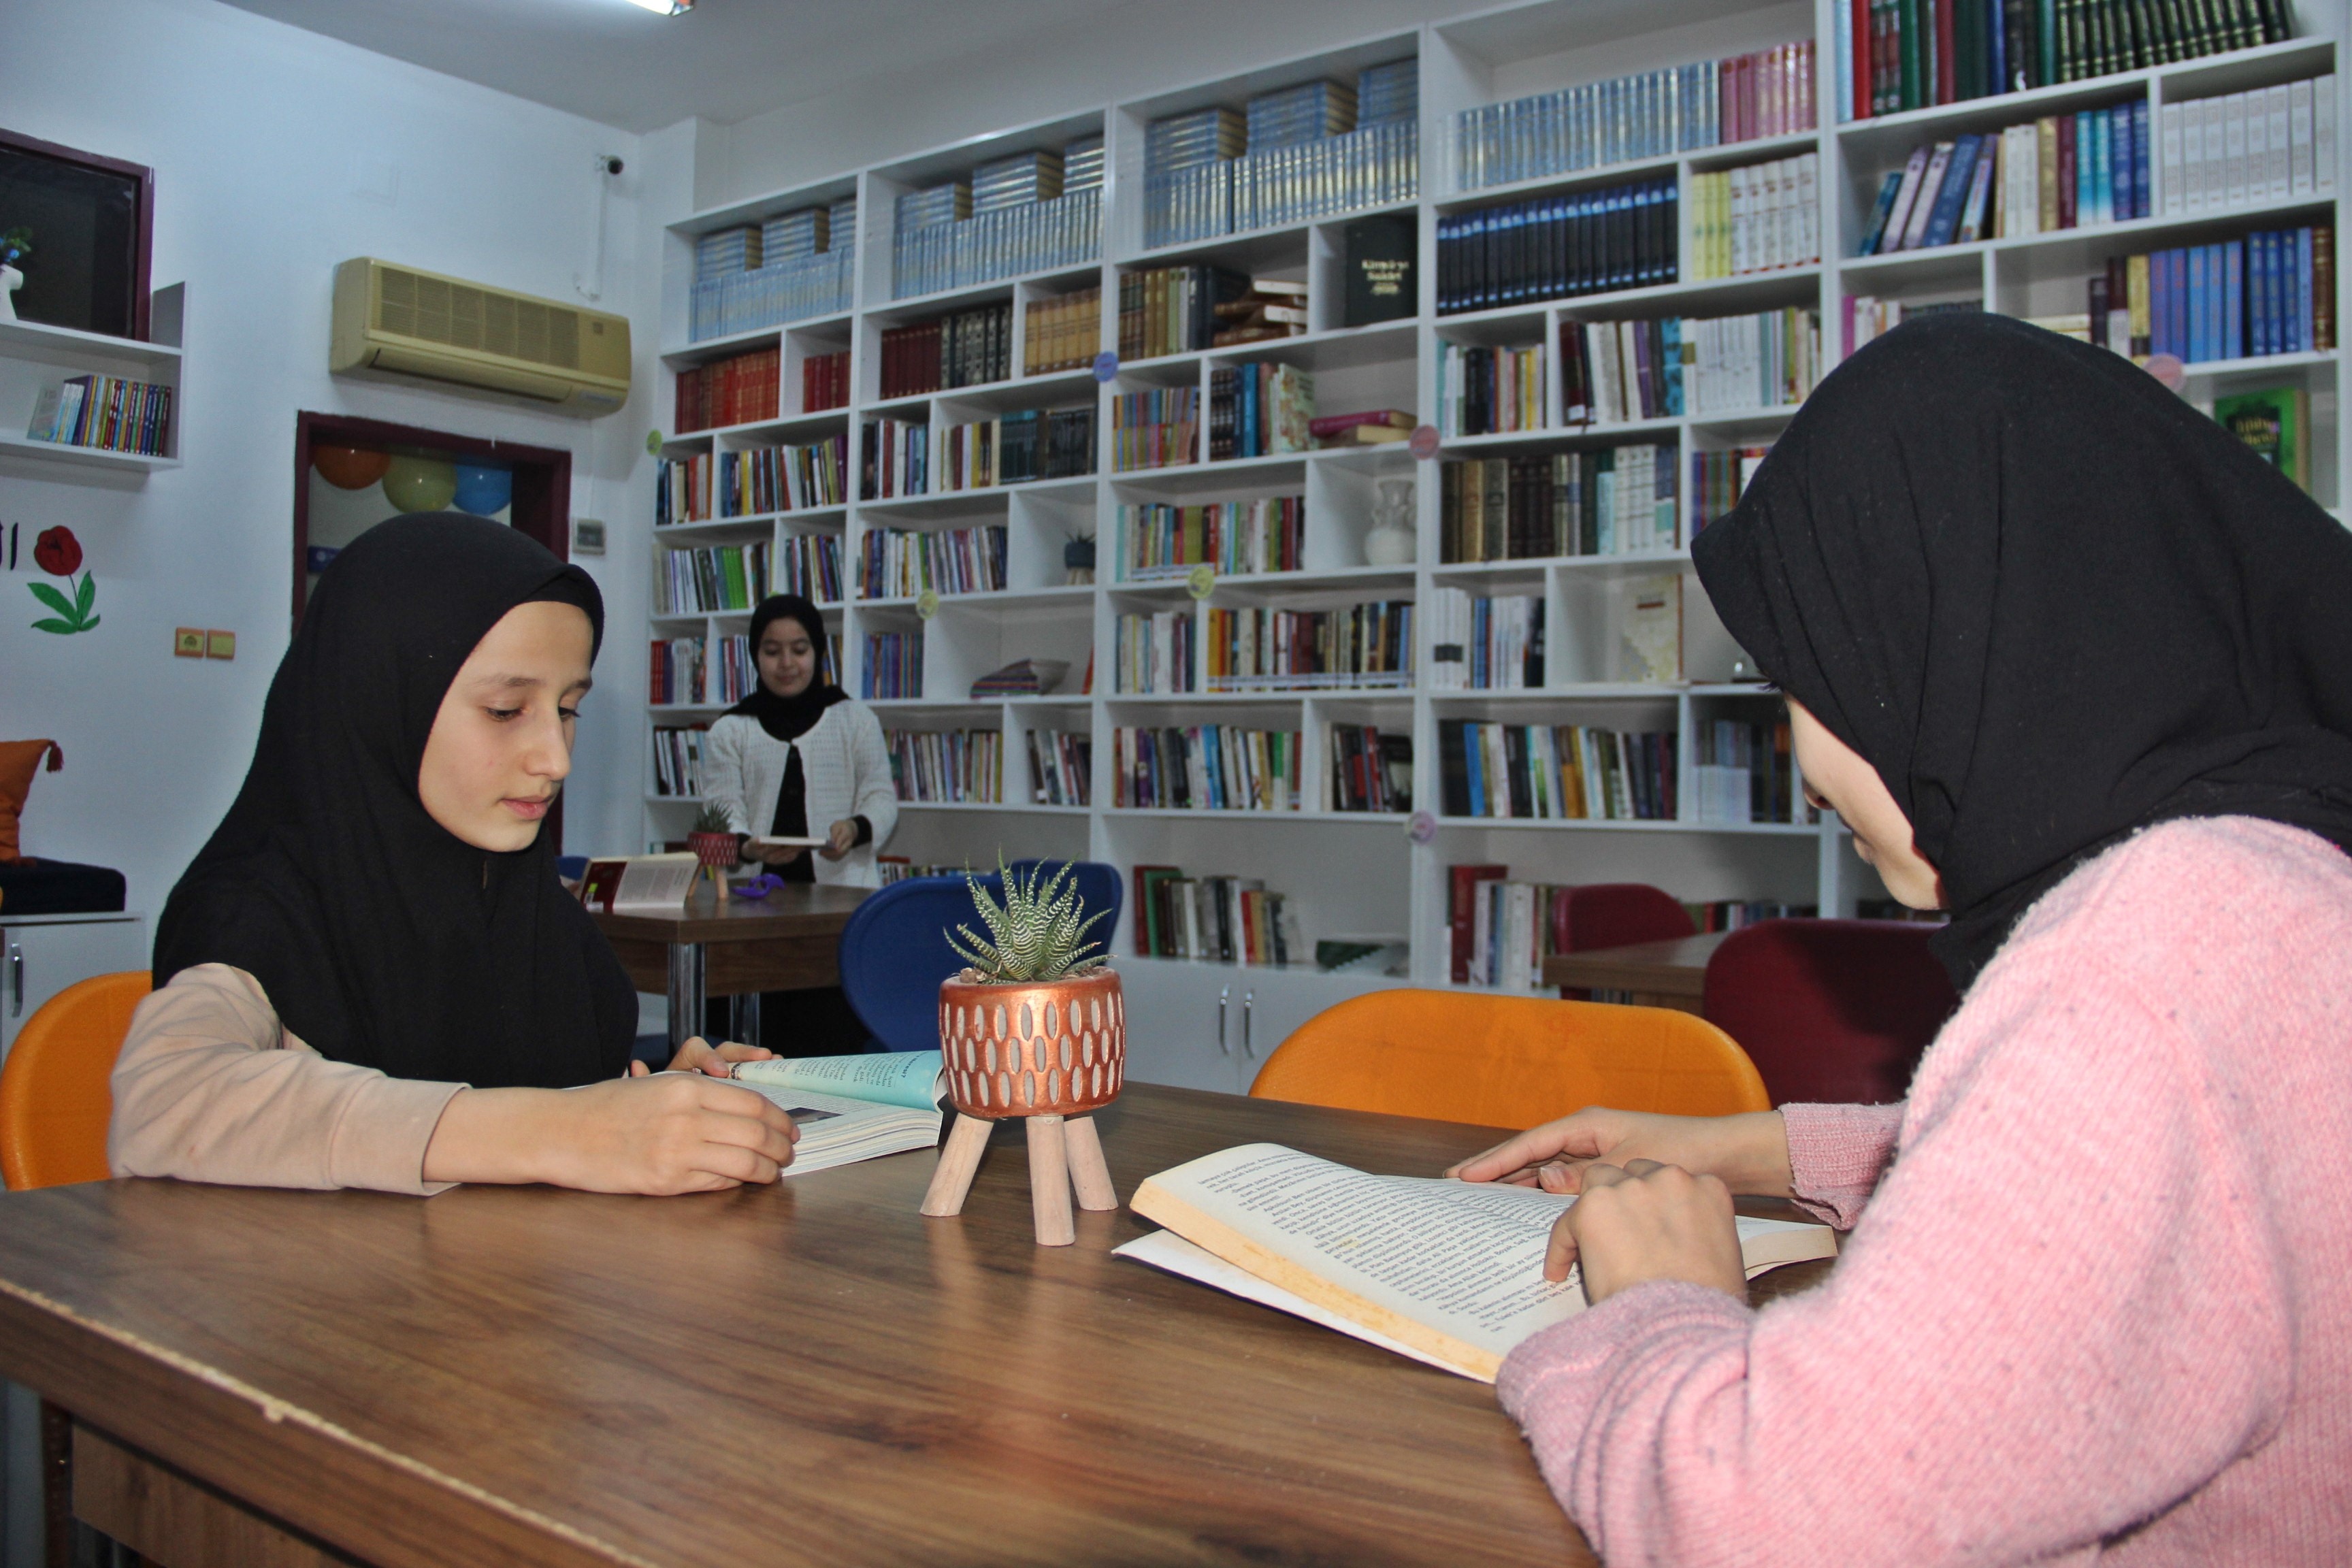 Cizre'de Kız Hafız Öğrenciler için Kütüphane yapıldı